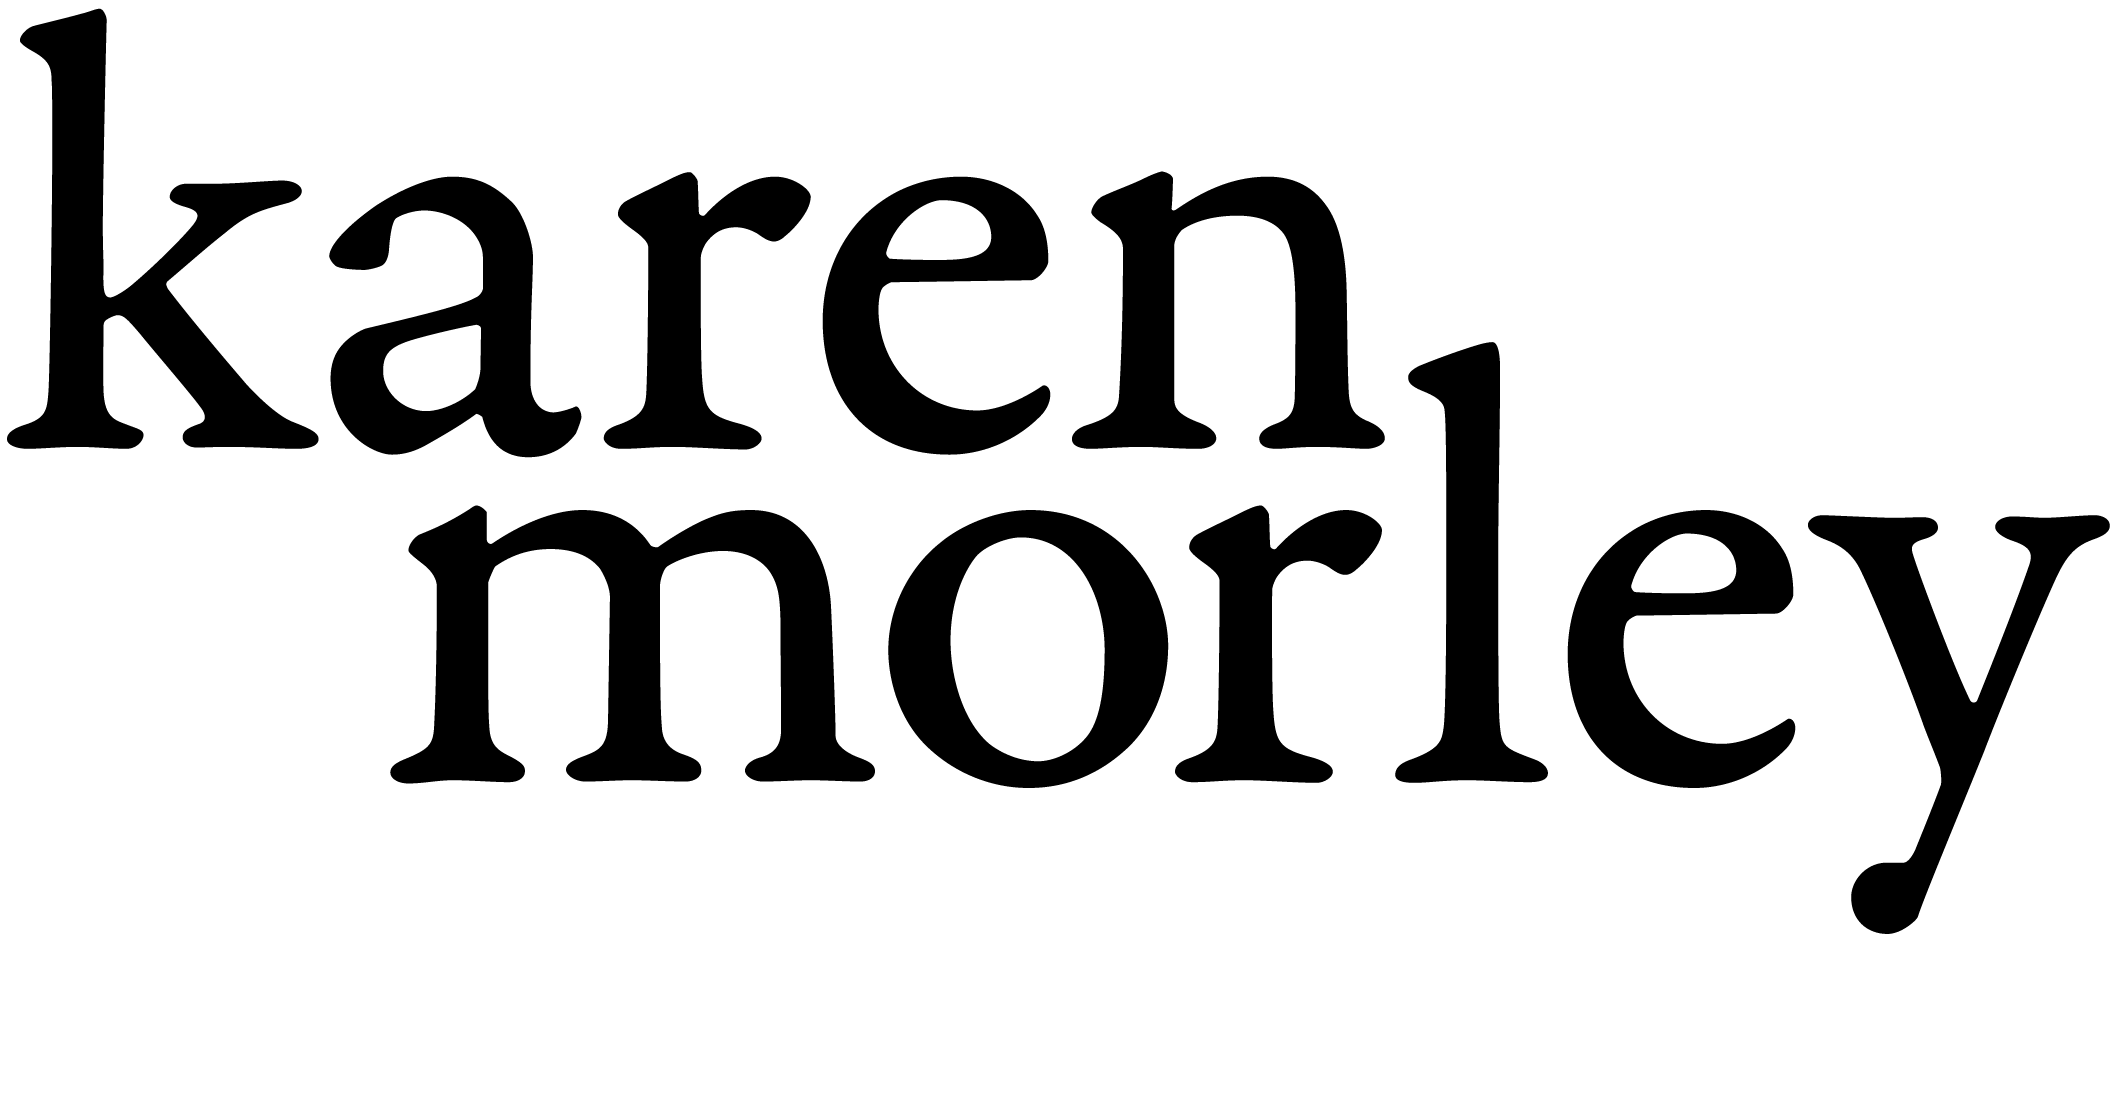 Karen Morley